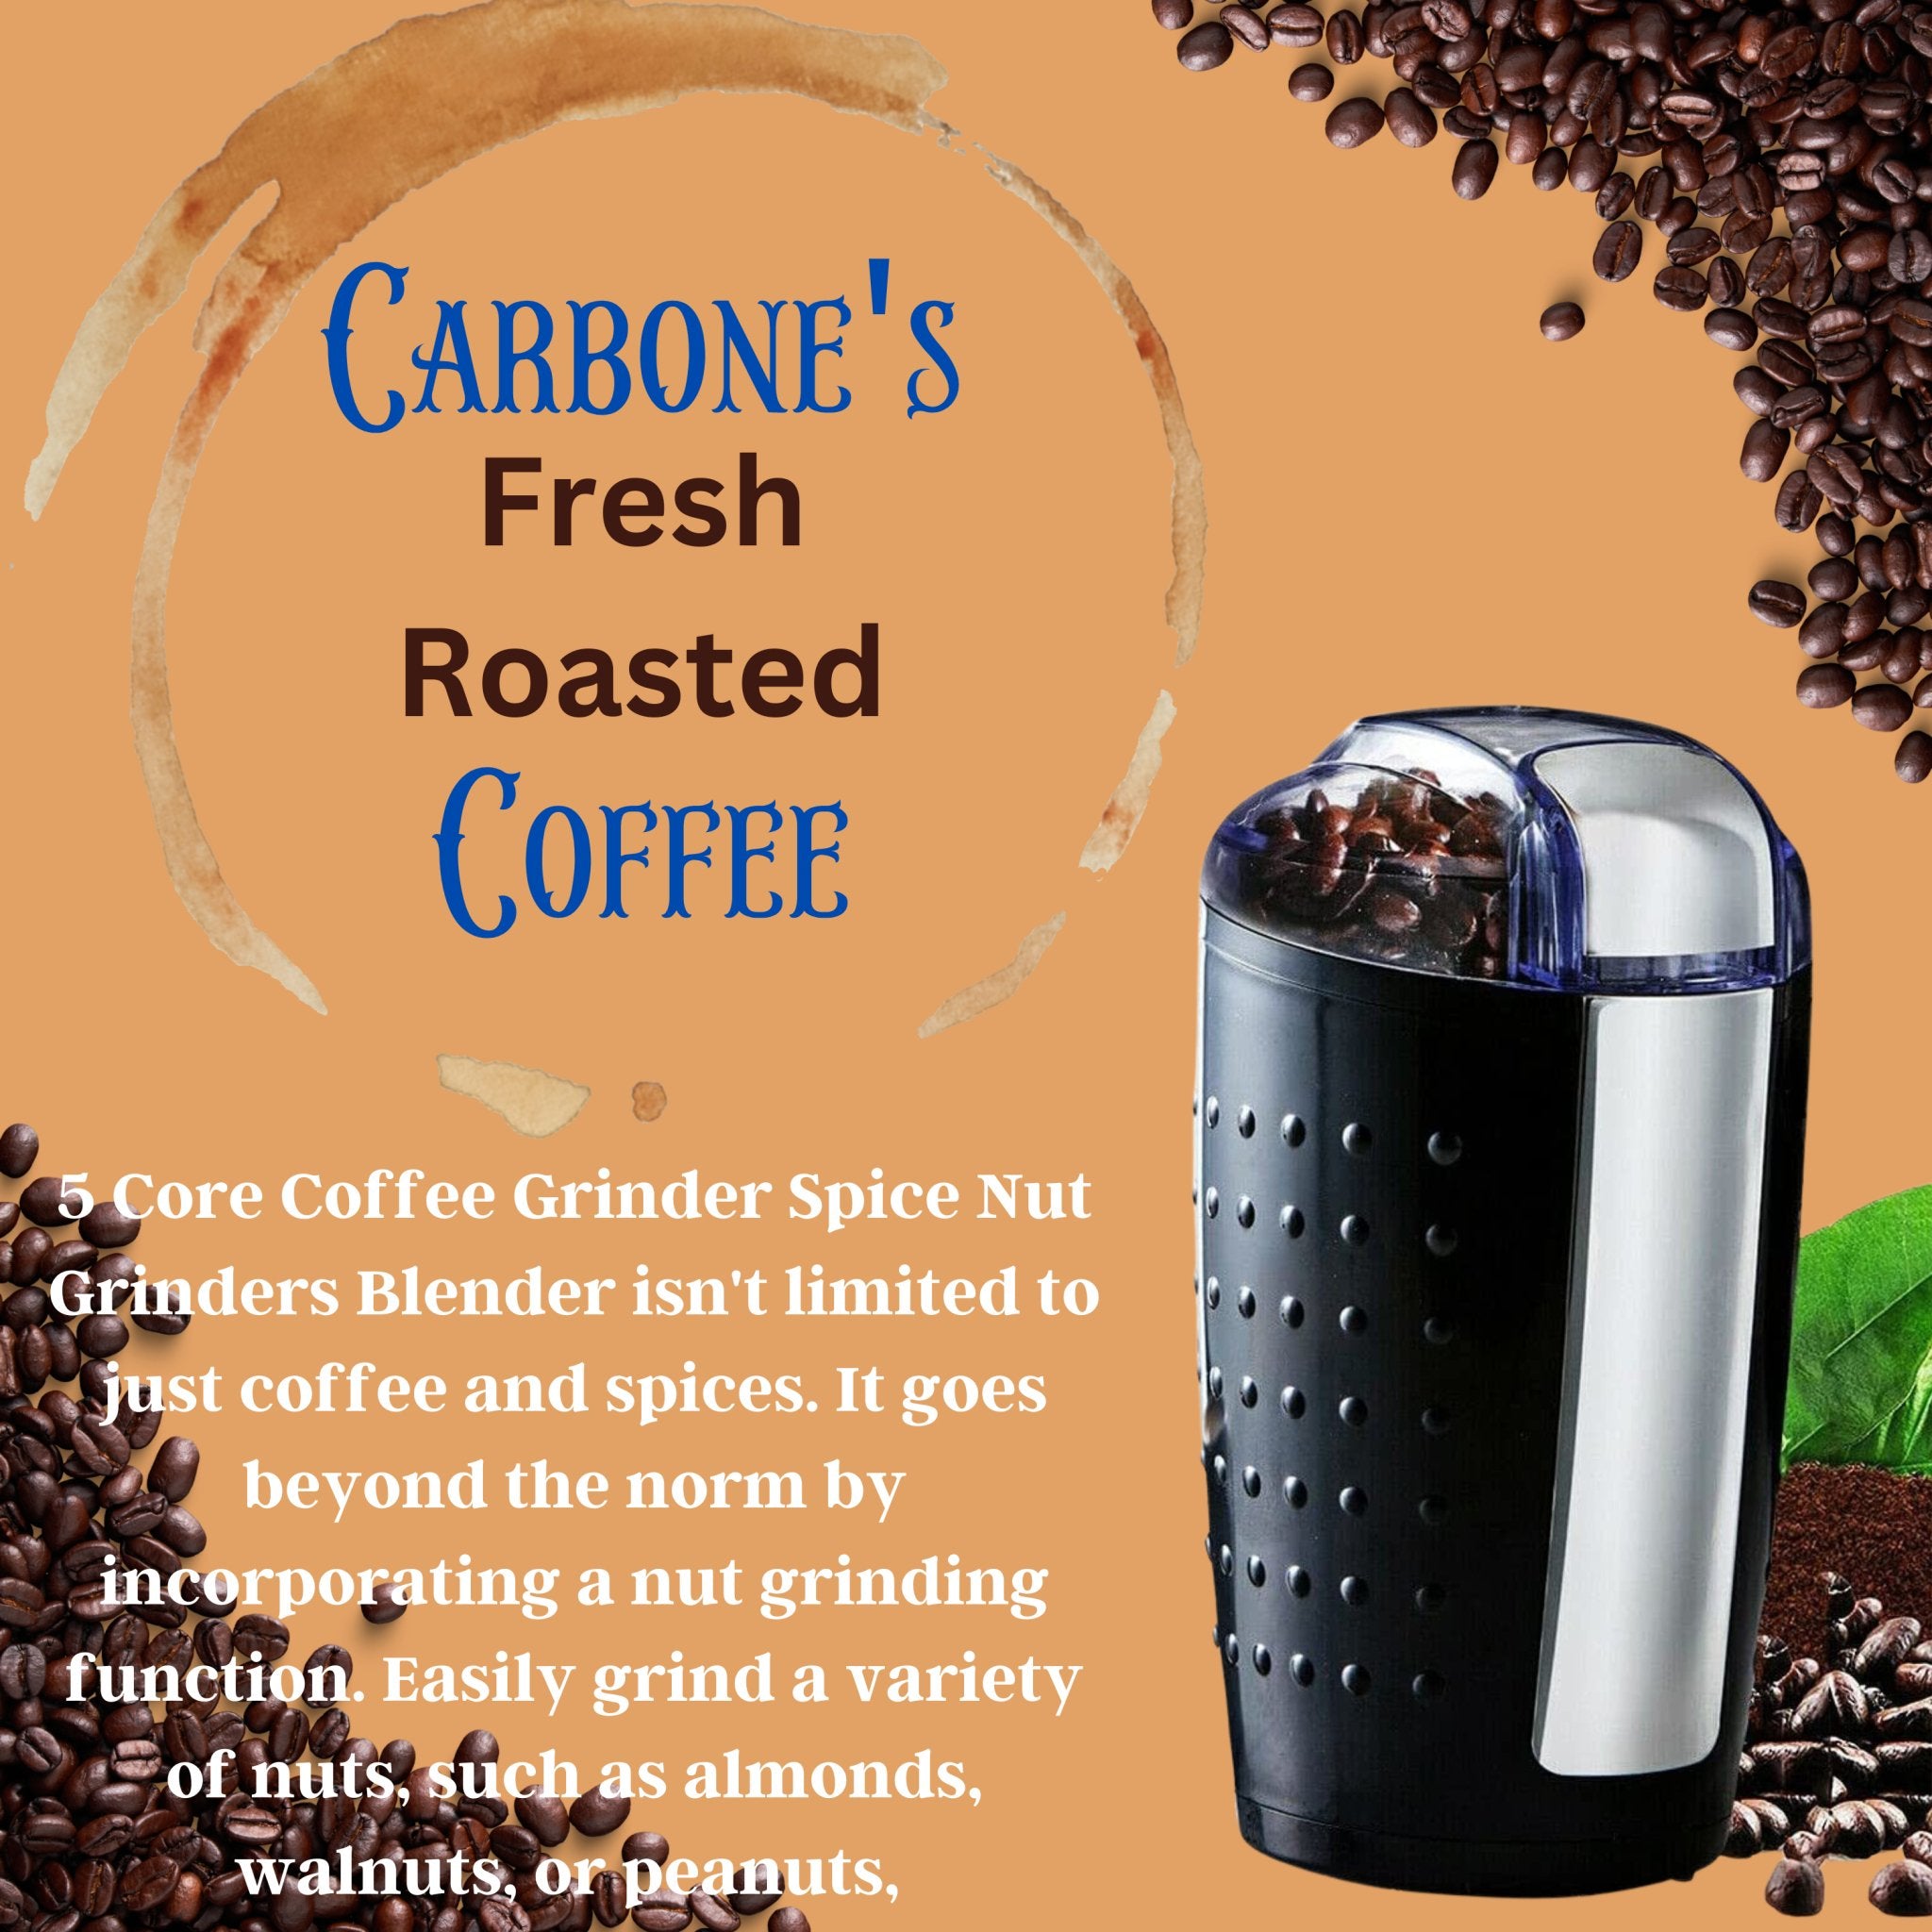 https://carbonesmarketplace.com/cdn/shop/products/5-core-coffee-grinder-spice-nut-grinders-blender-407552.jpg?v=1697547268